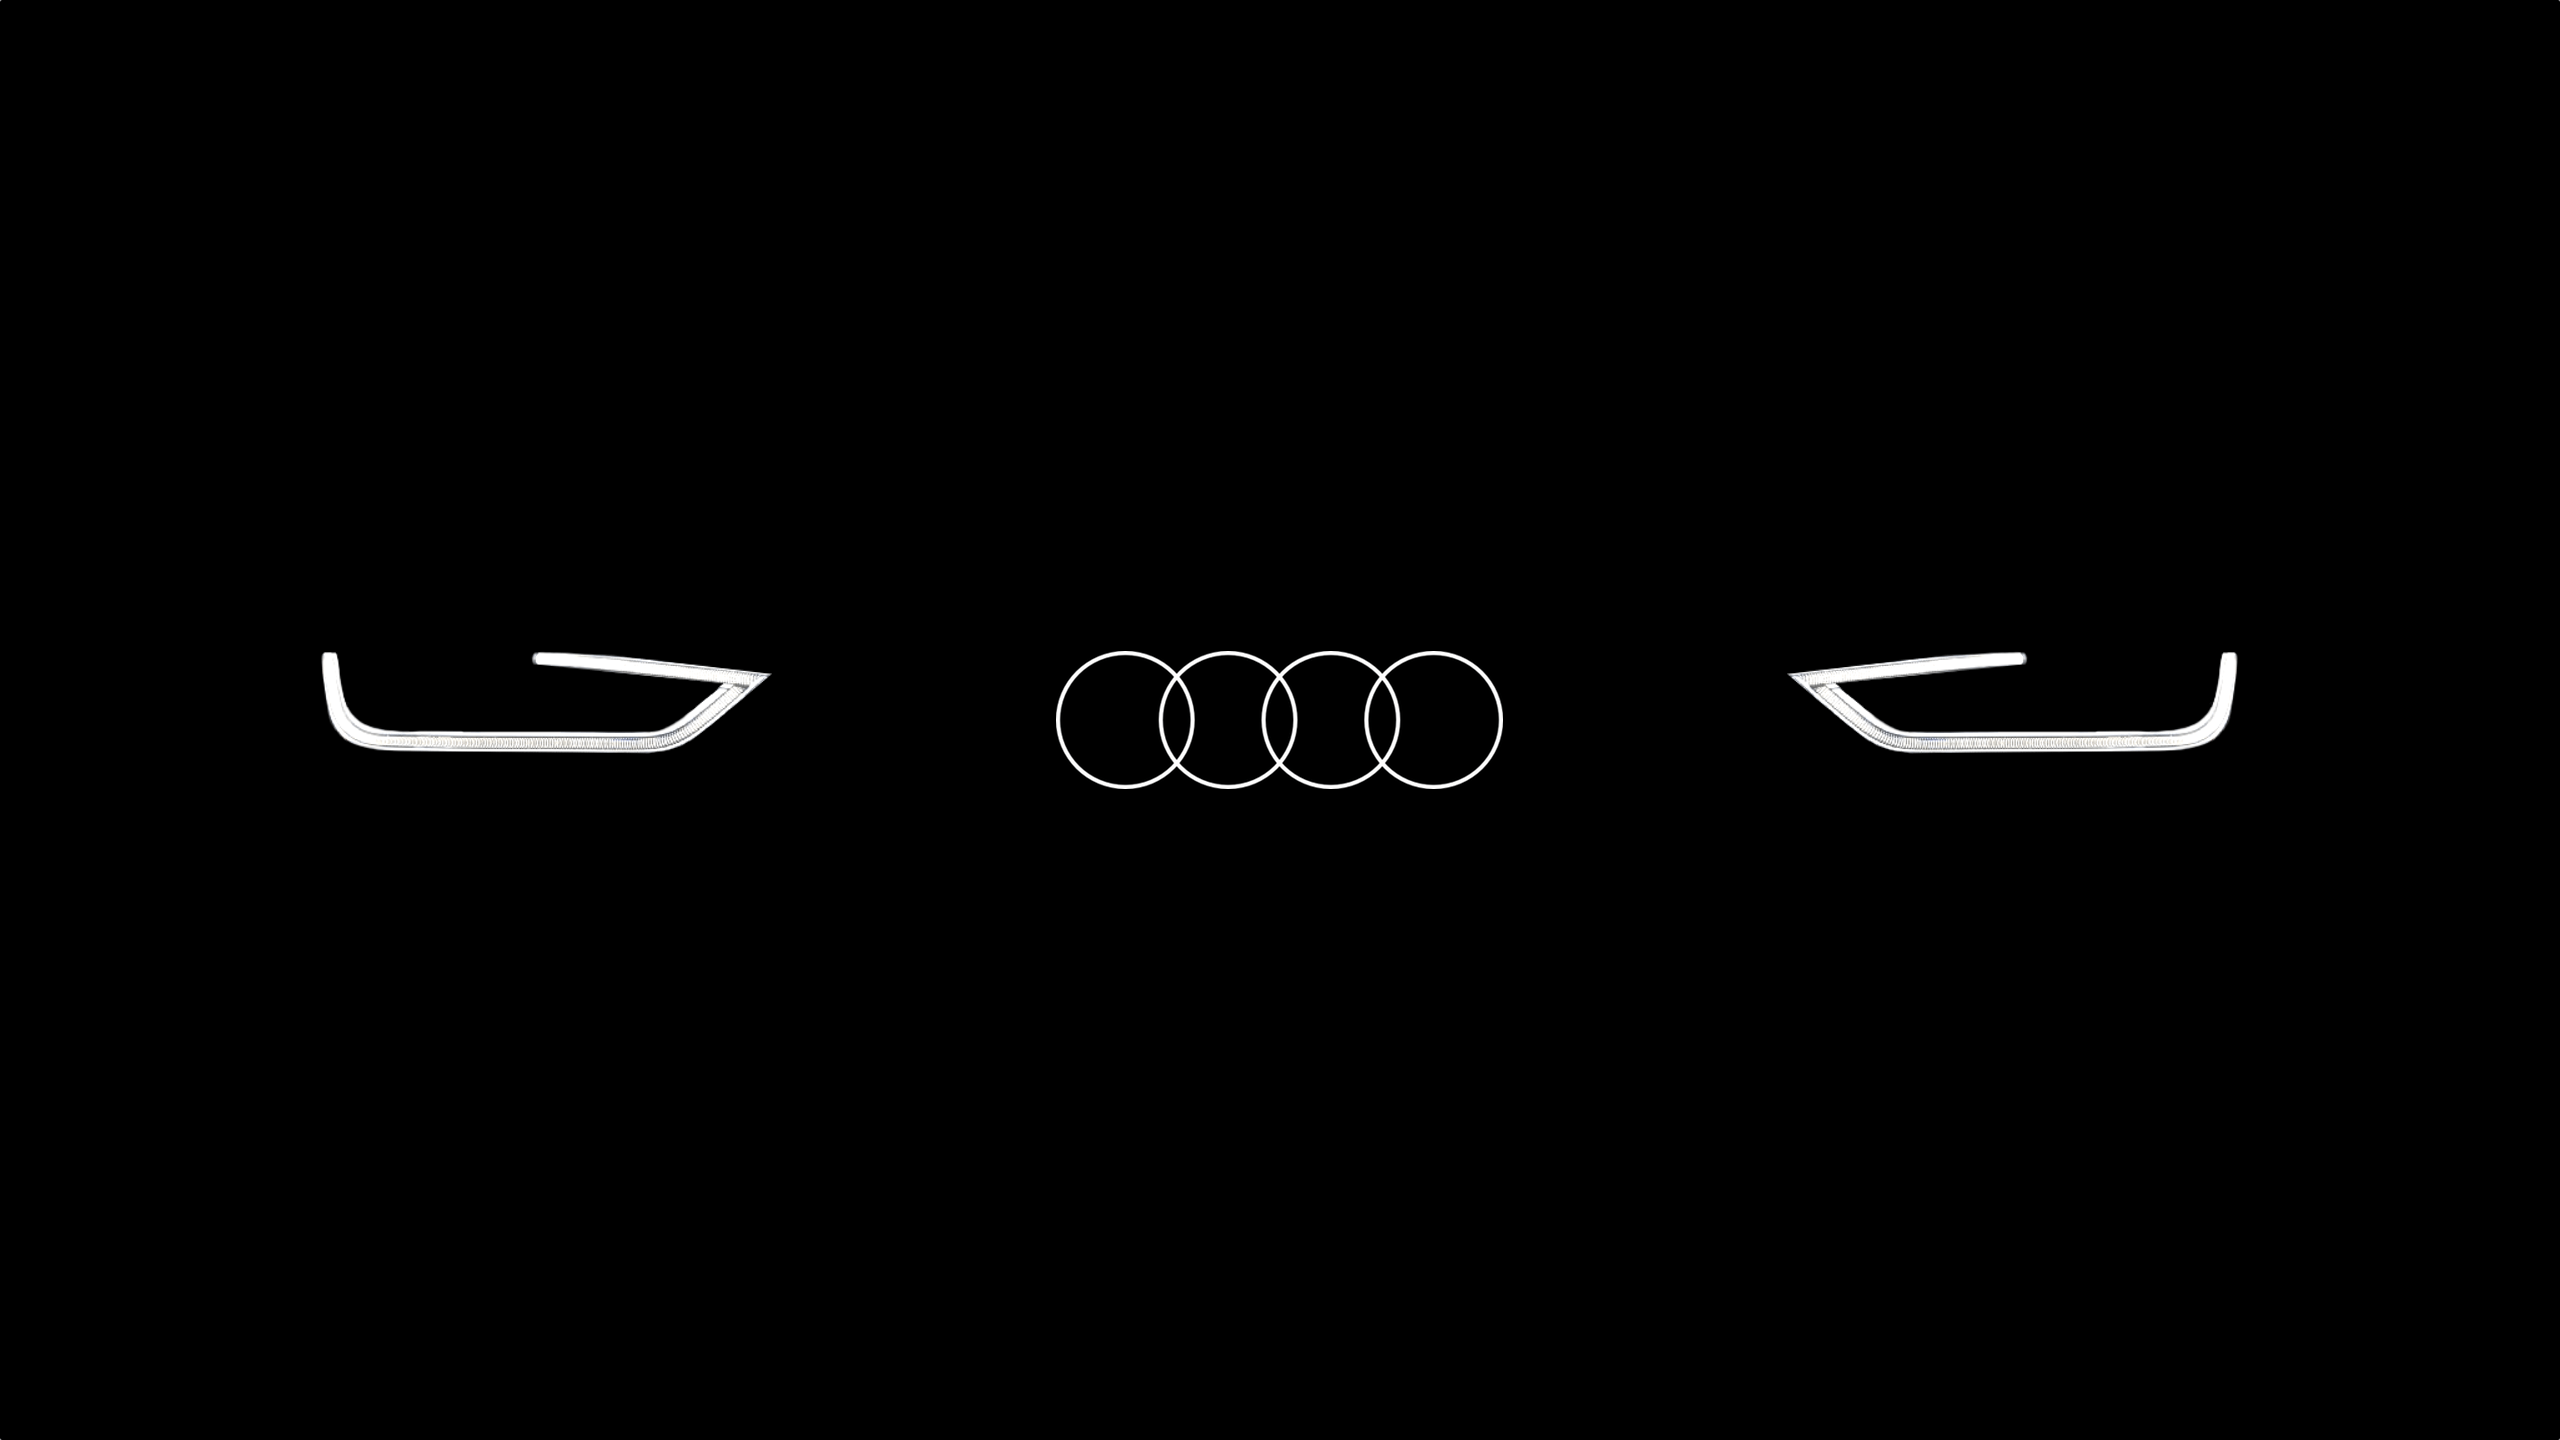 Audi Logo Wallpaper Free Audi Logo Background